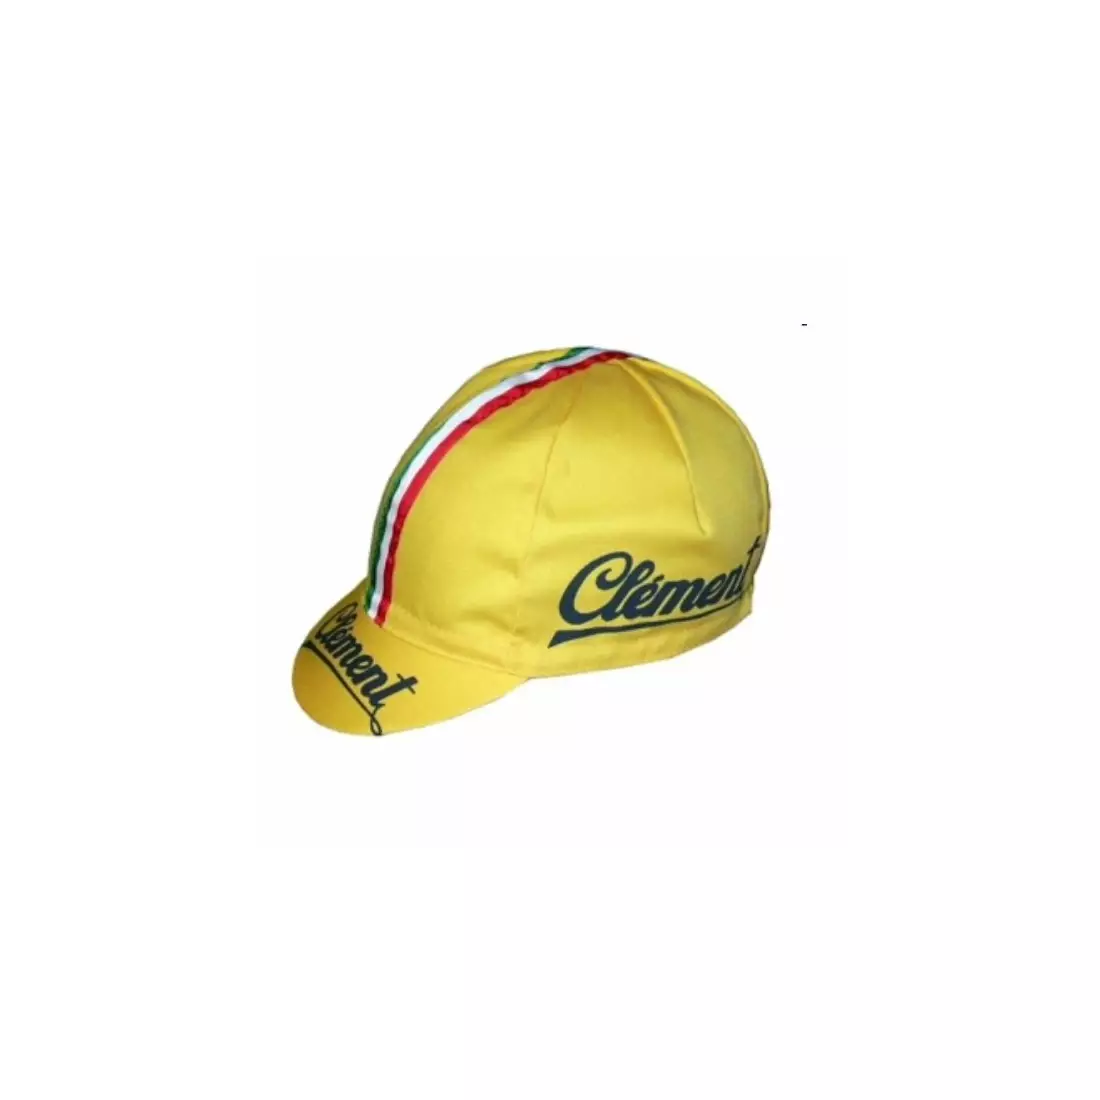 APIS PROFI CLEMENT cycling cap with visor